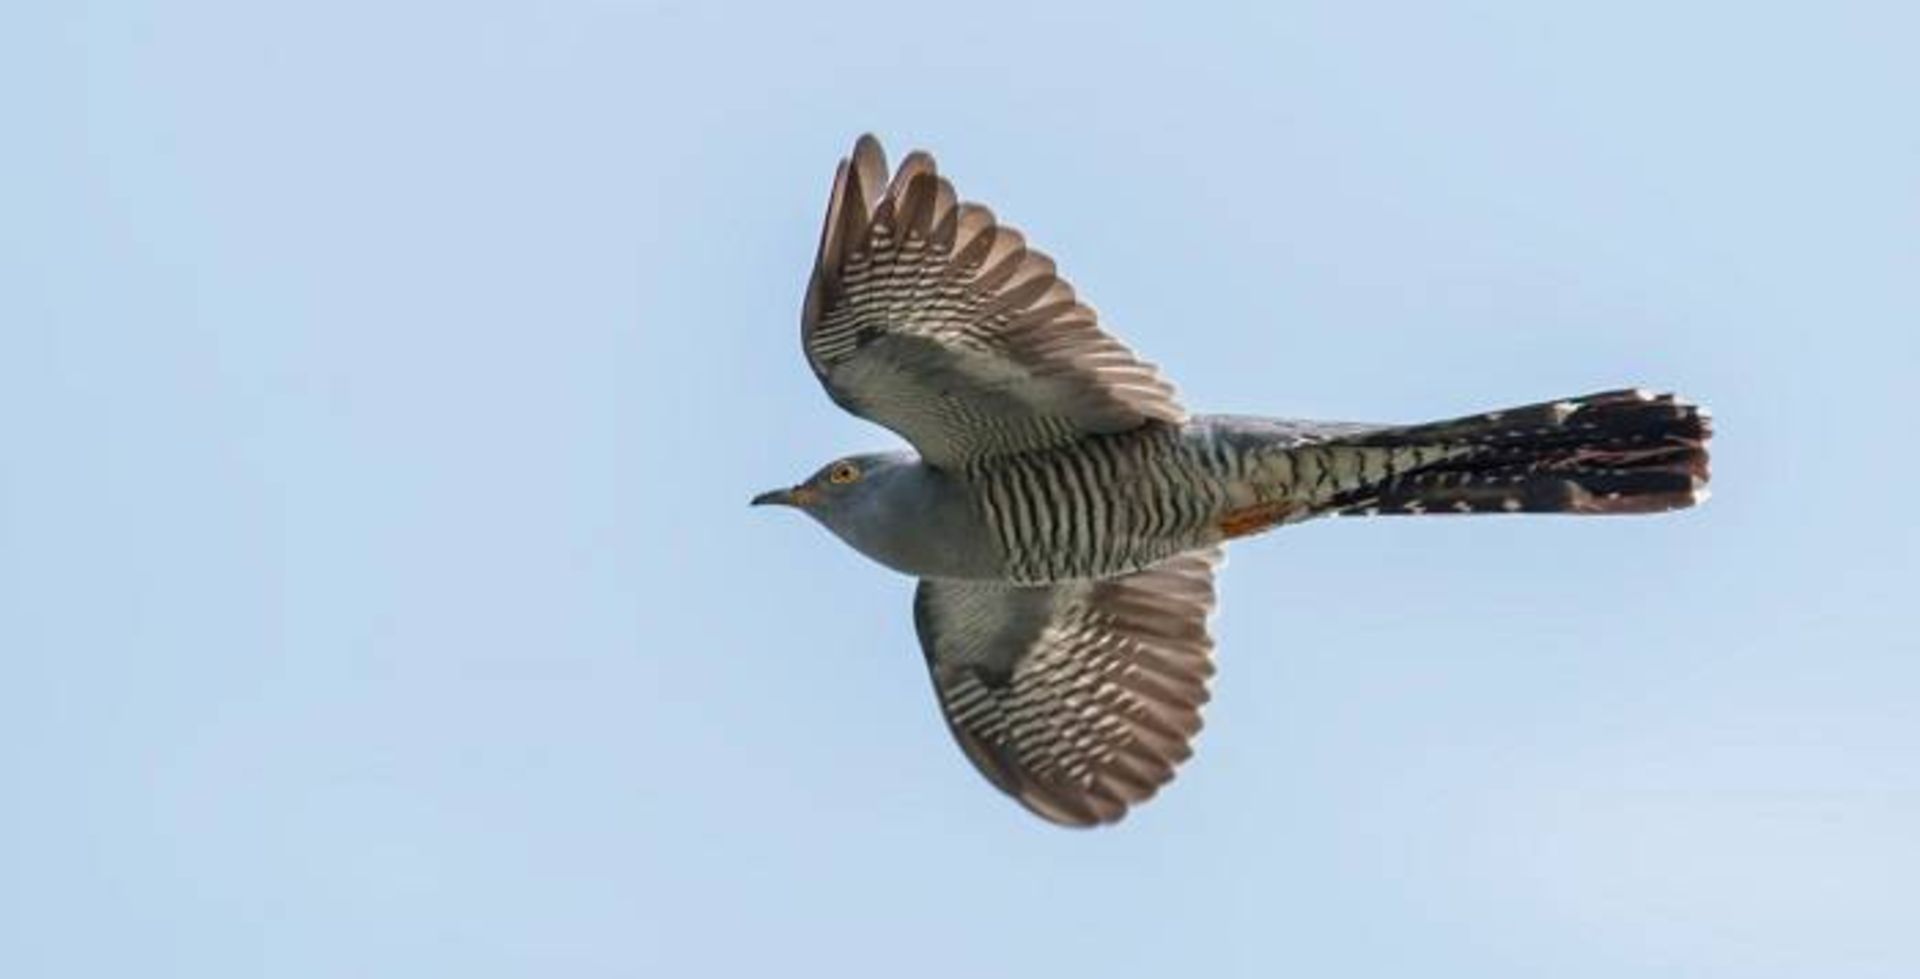 پرنده کوکوی معمولی / common cuckoo